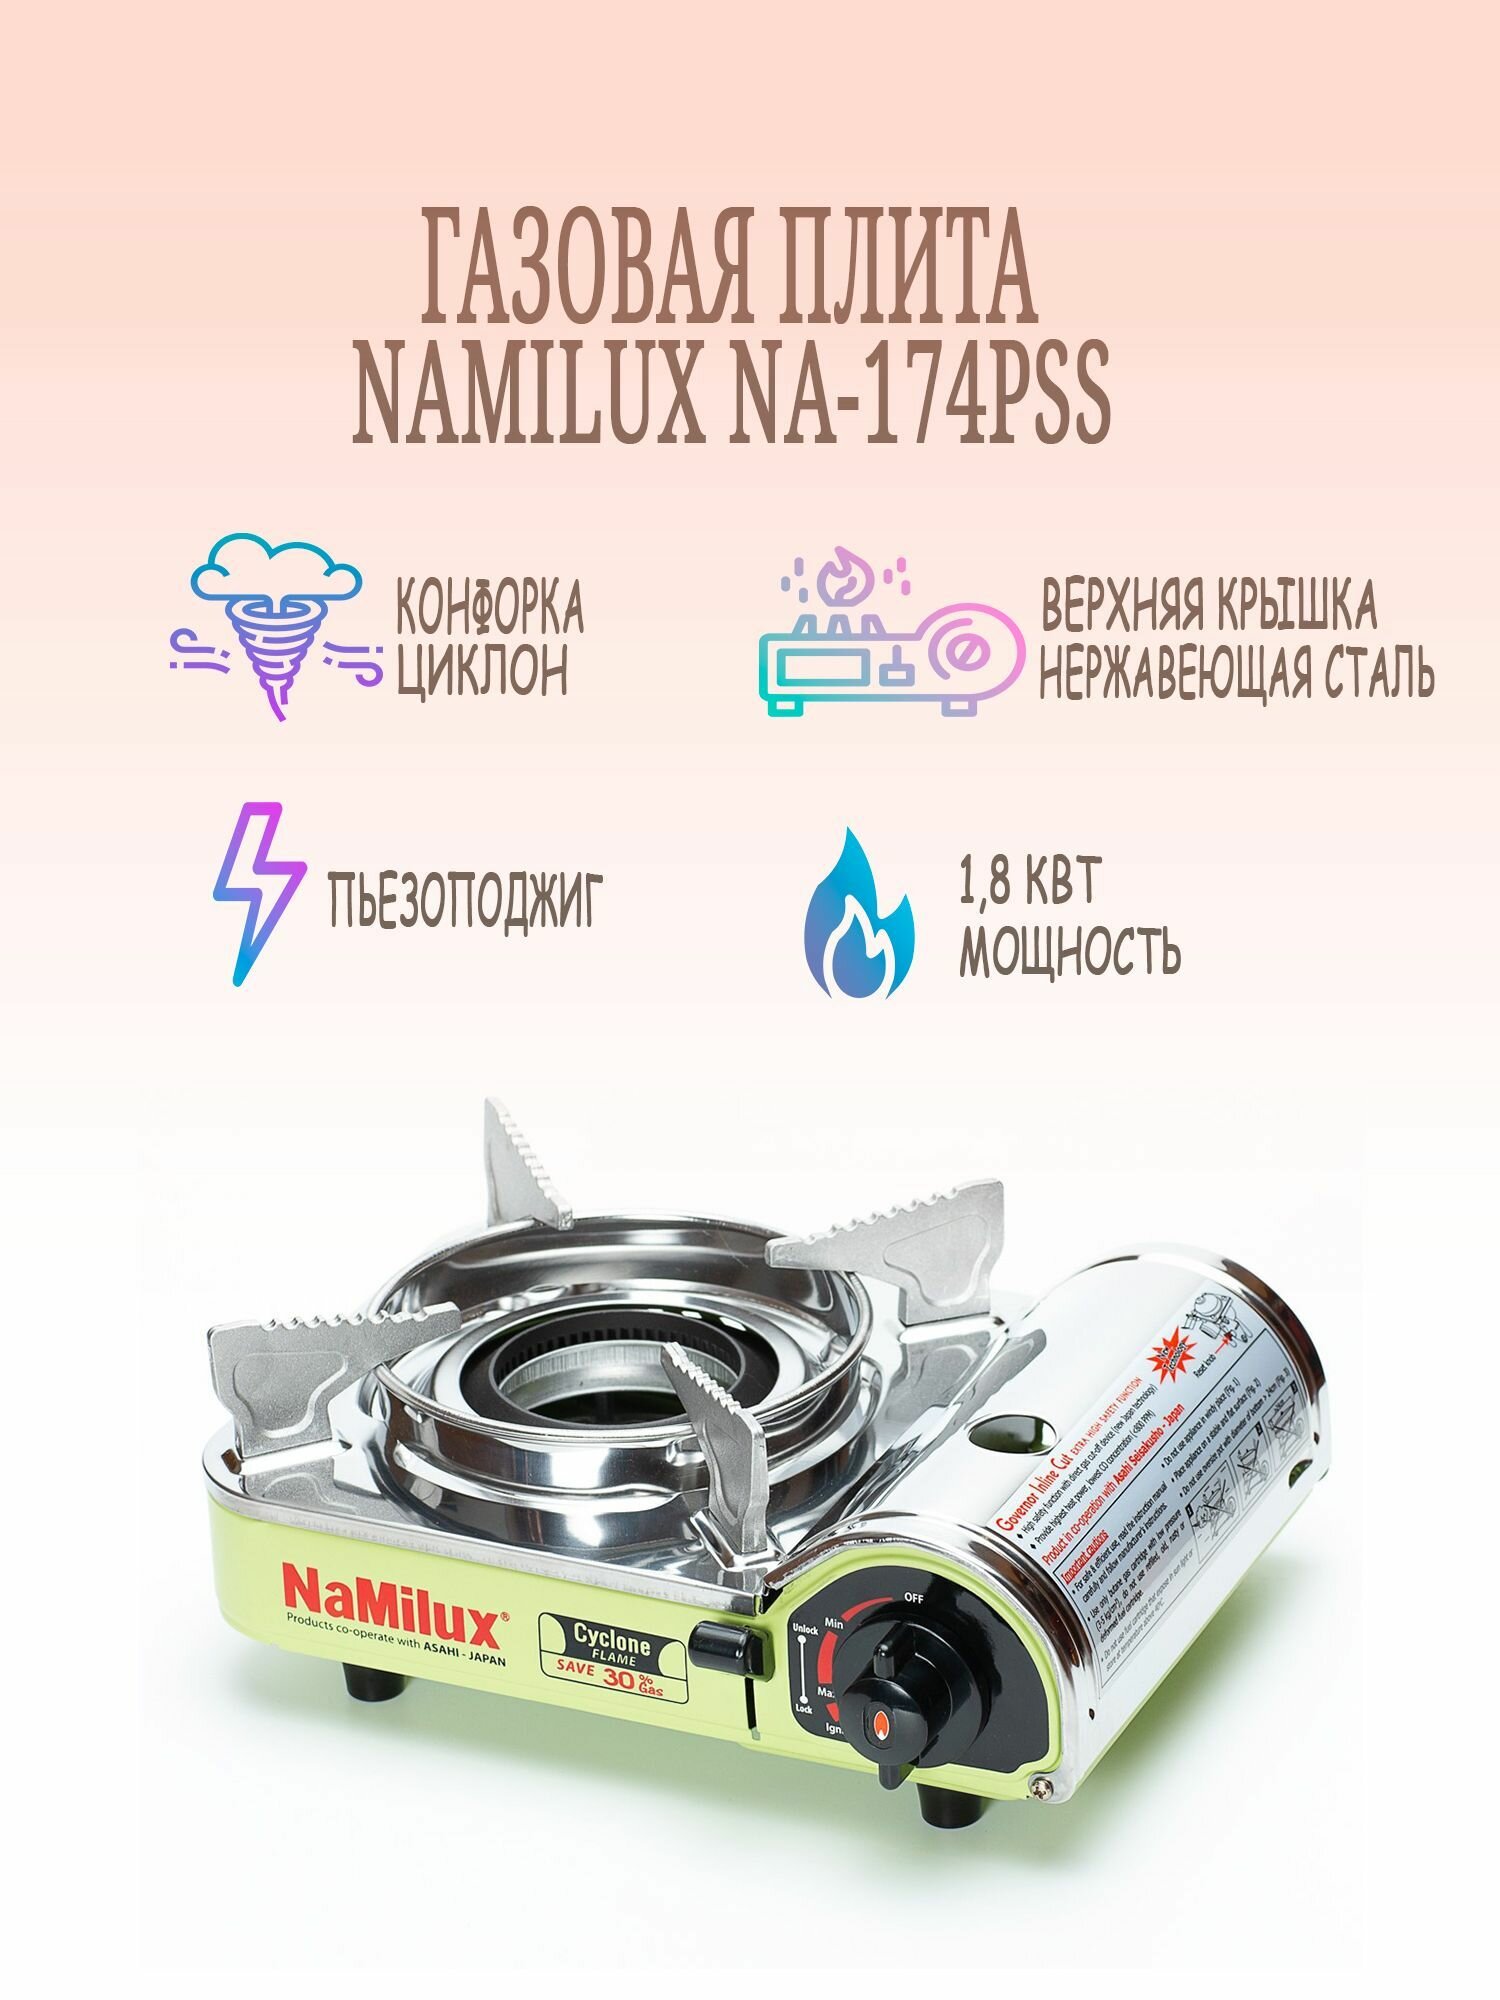 Плита газовая NaMilux NA-174PSS